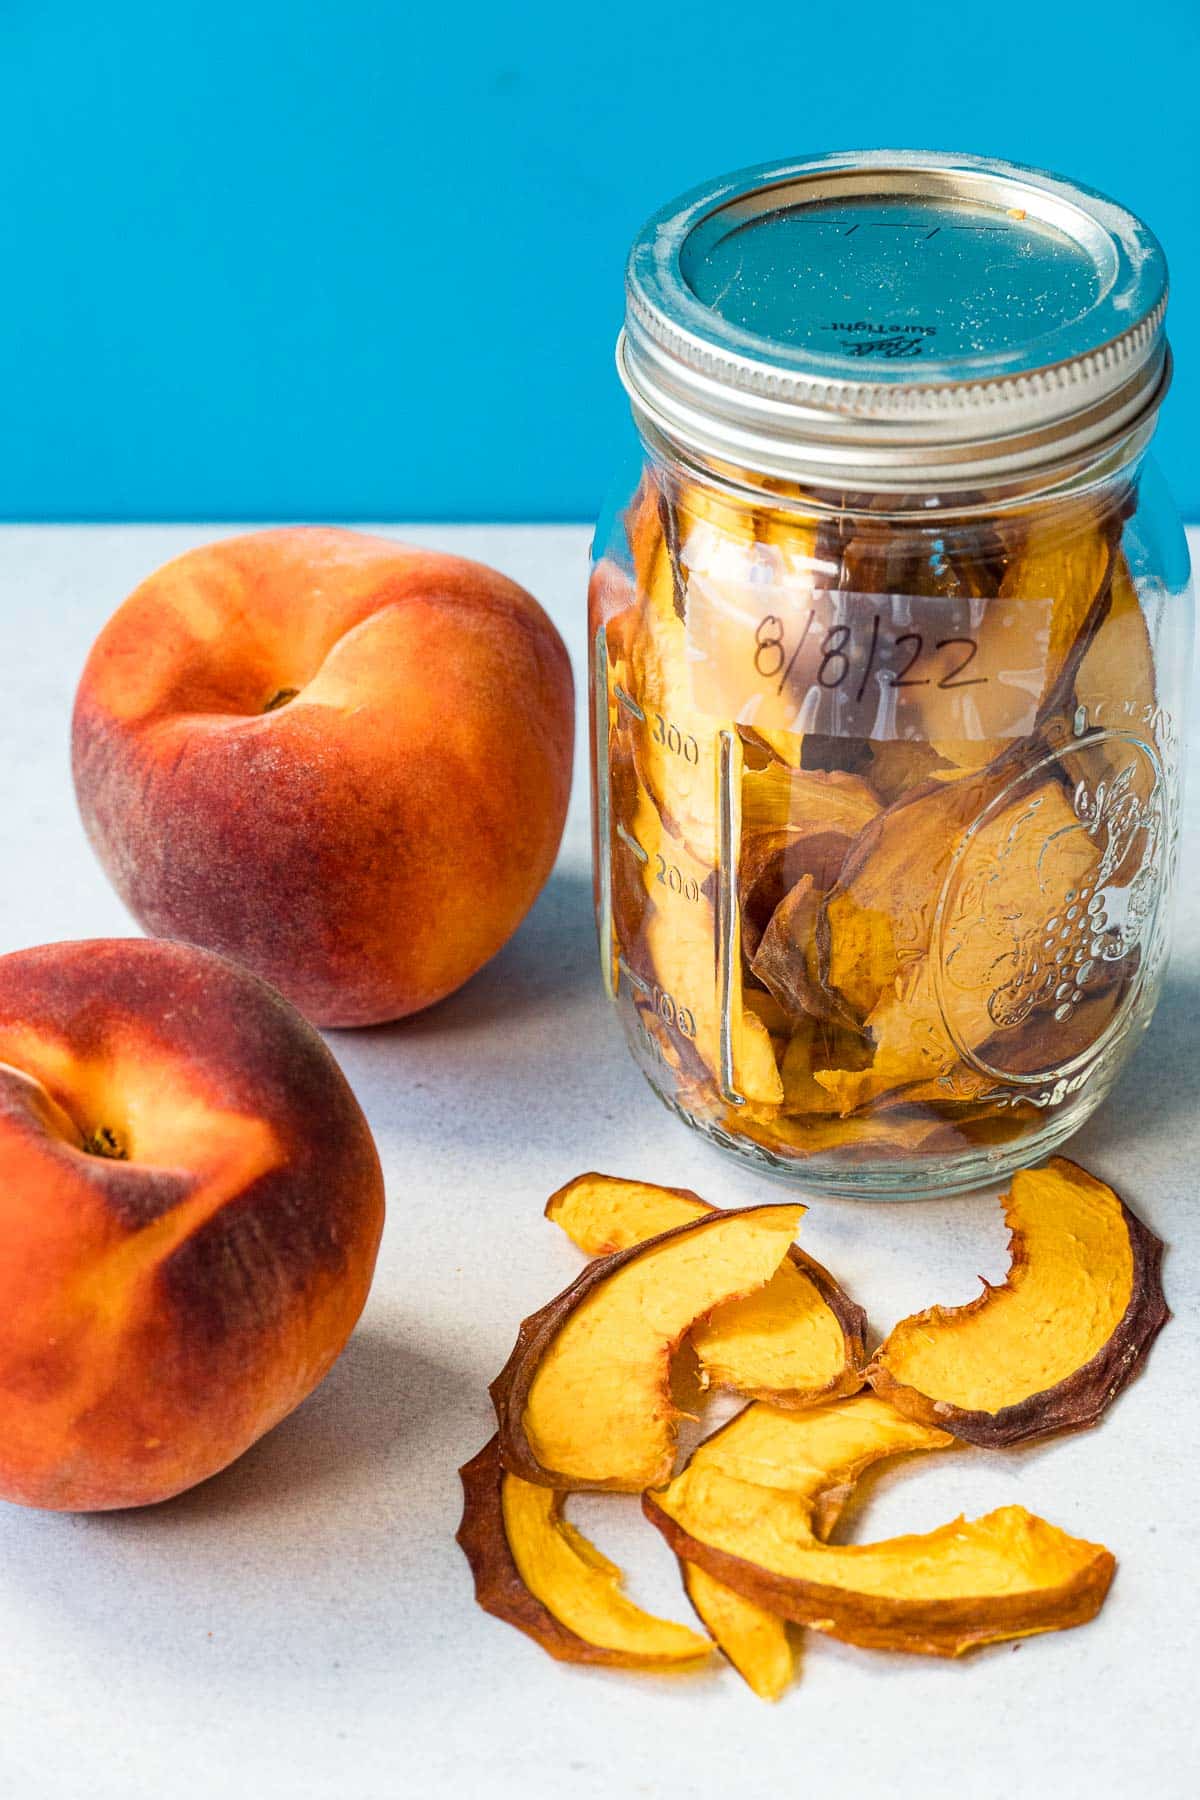 Dried peaches in a glass jar